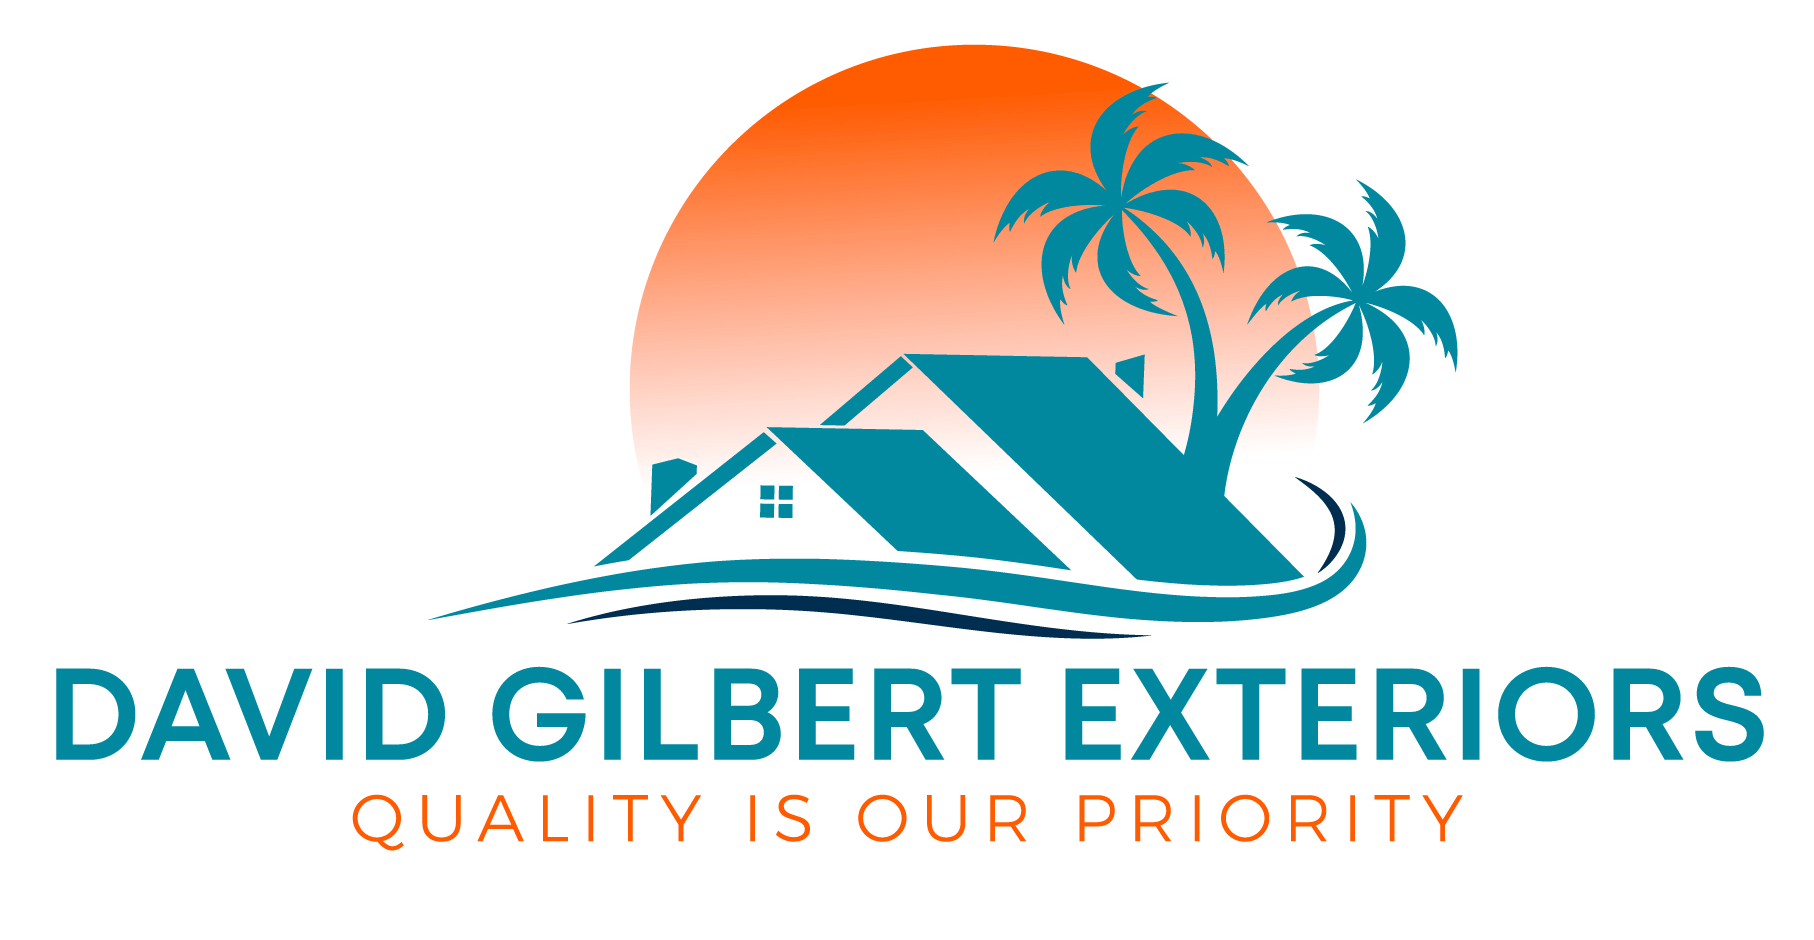 David Gilbert Exteriors Inc